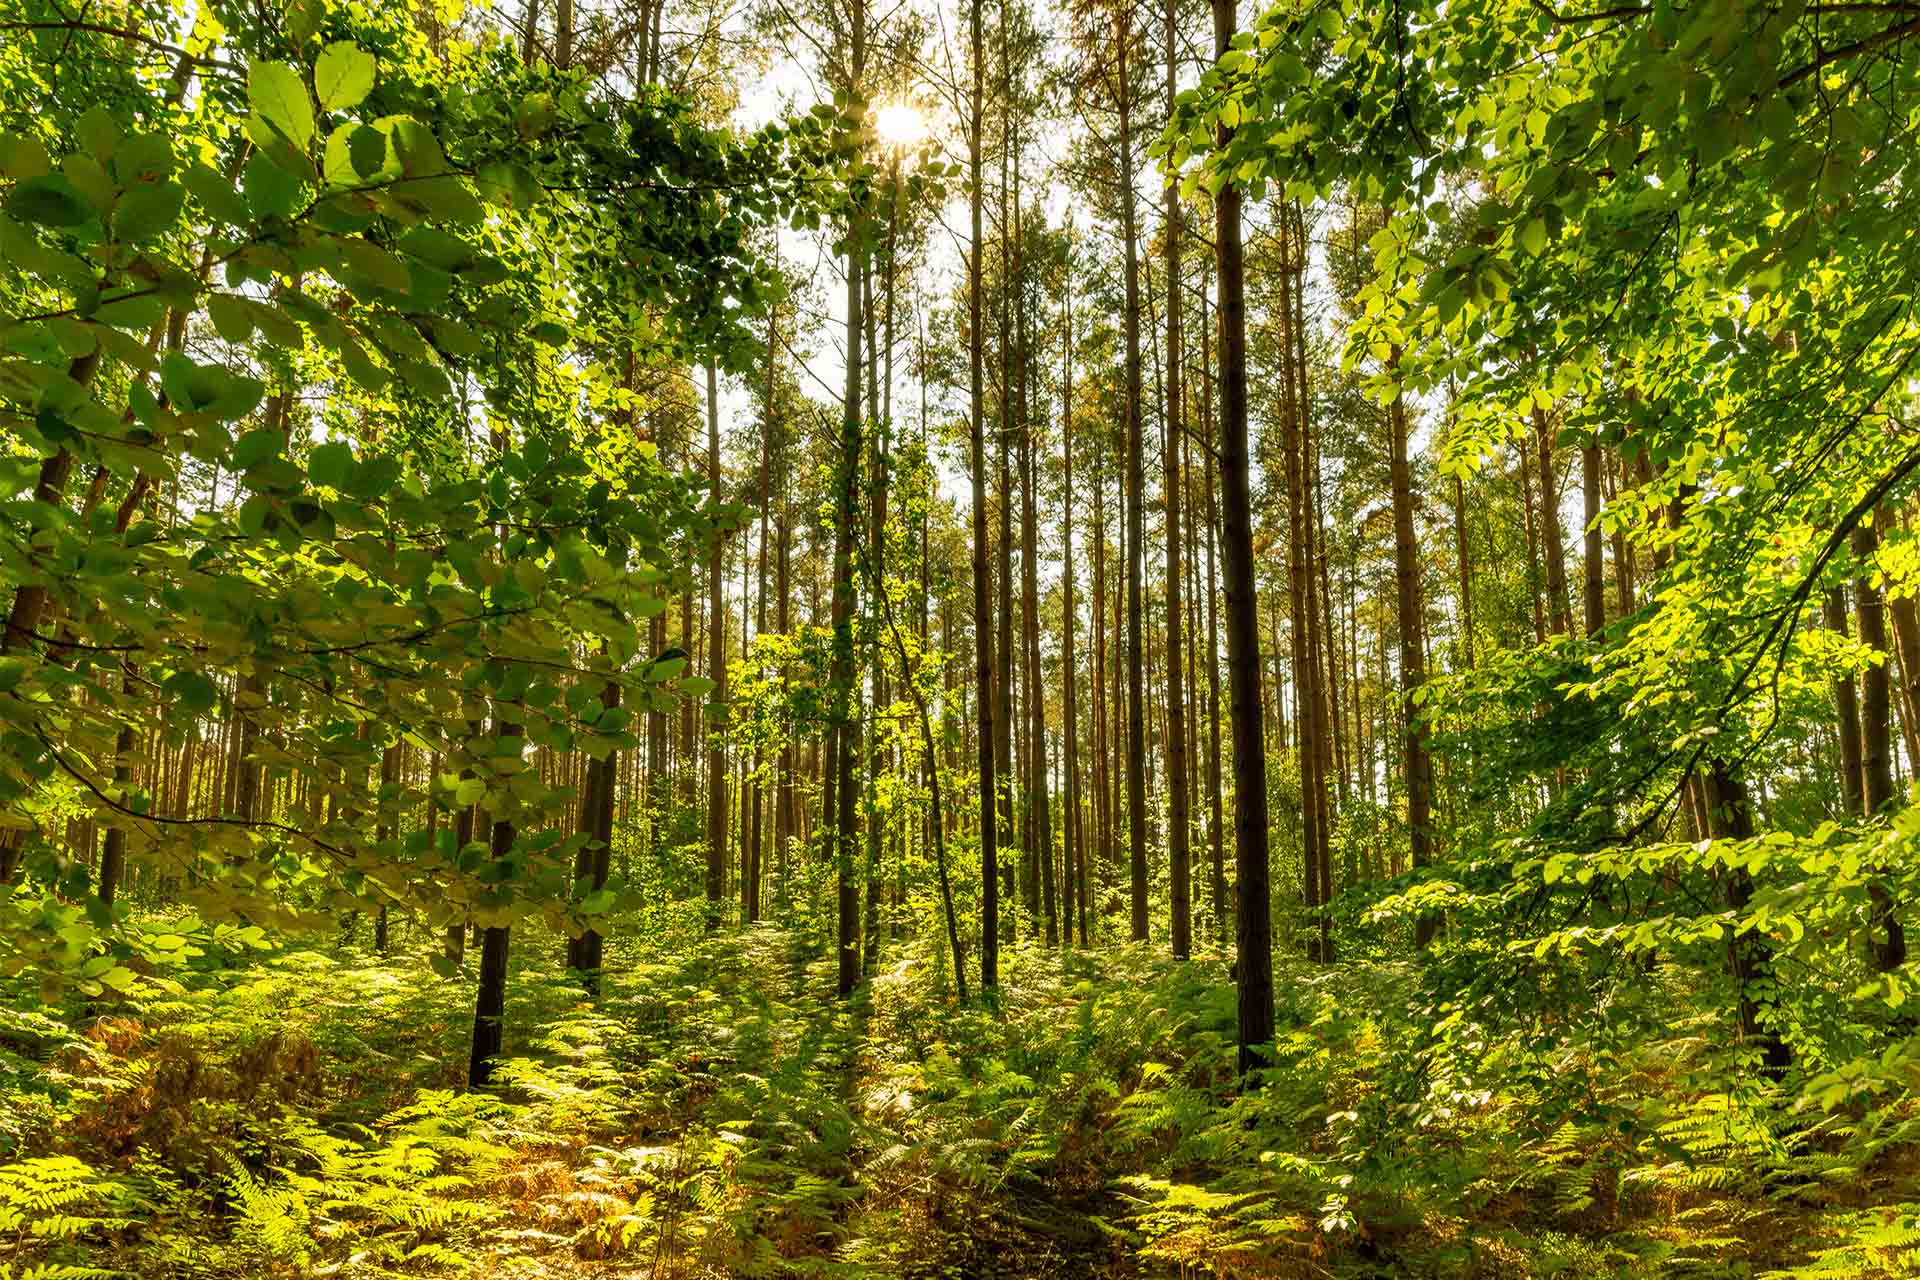 Mischwald & Wild Wald Balance: Jagdfakten.at informiert über Wichtigkeit von ausgeglichenen wald- und wildökologische Verhältnissen